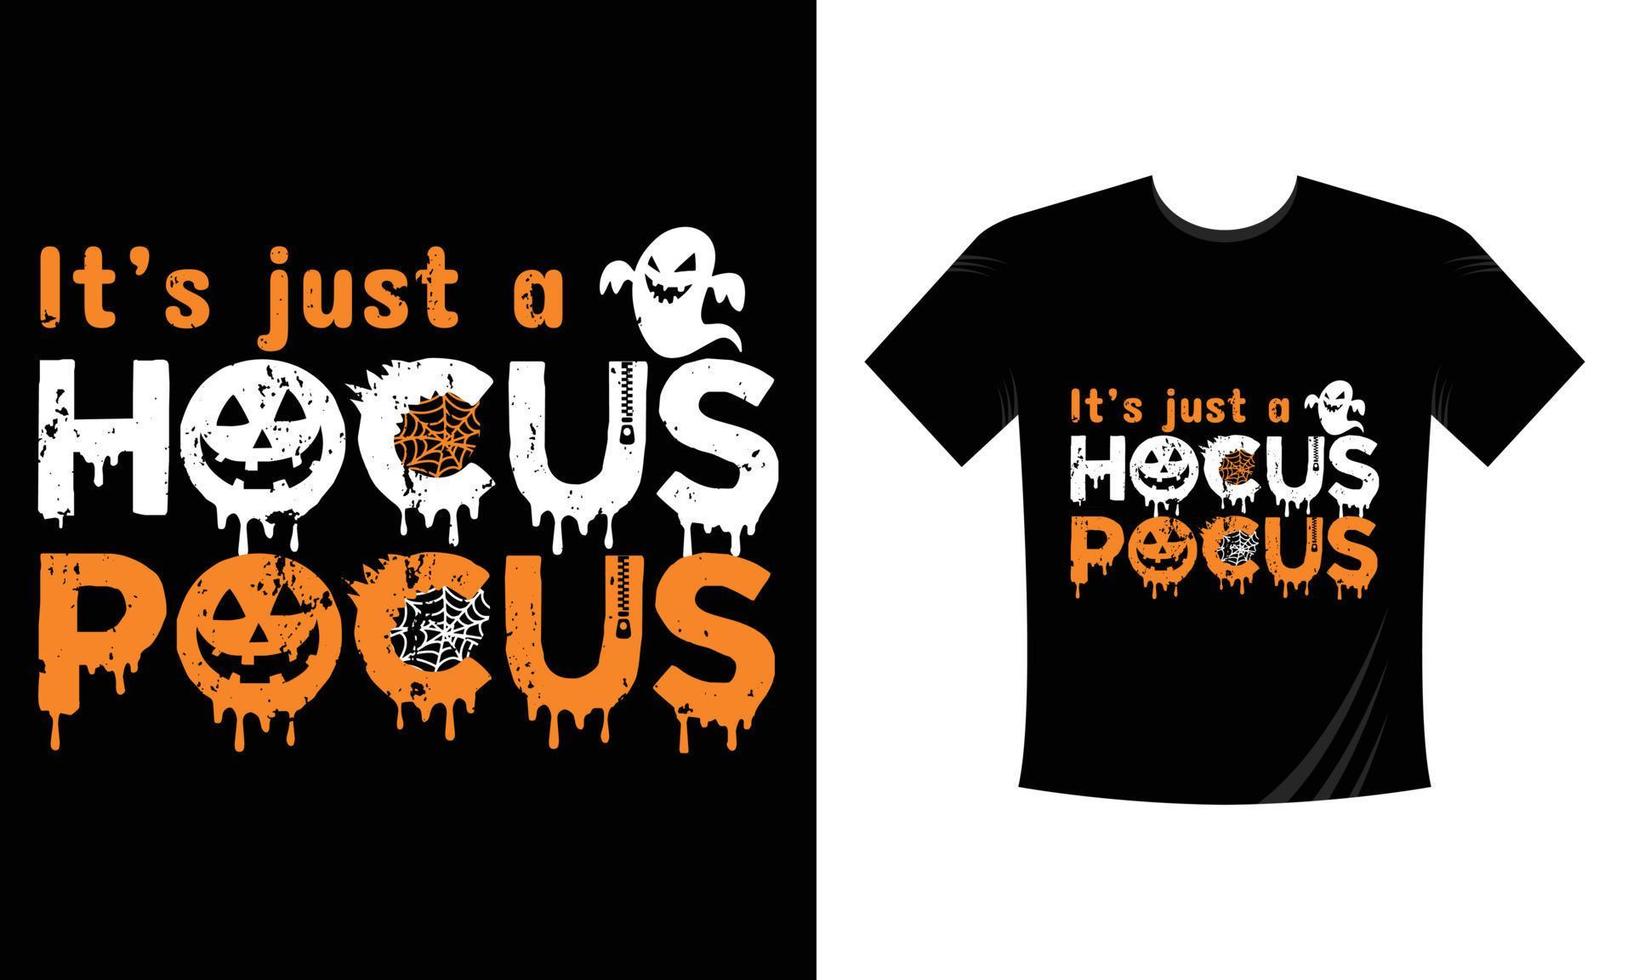 haar alleen maar een bundel van hocus pocus -halloween afdrukken t-shirt typografie ontwerp vector